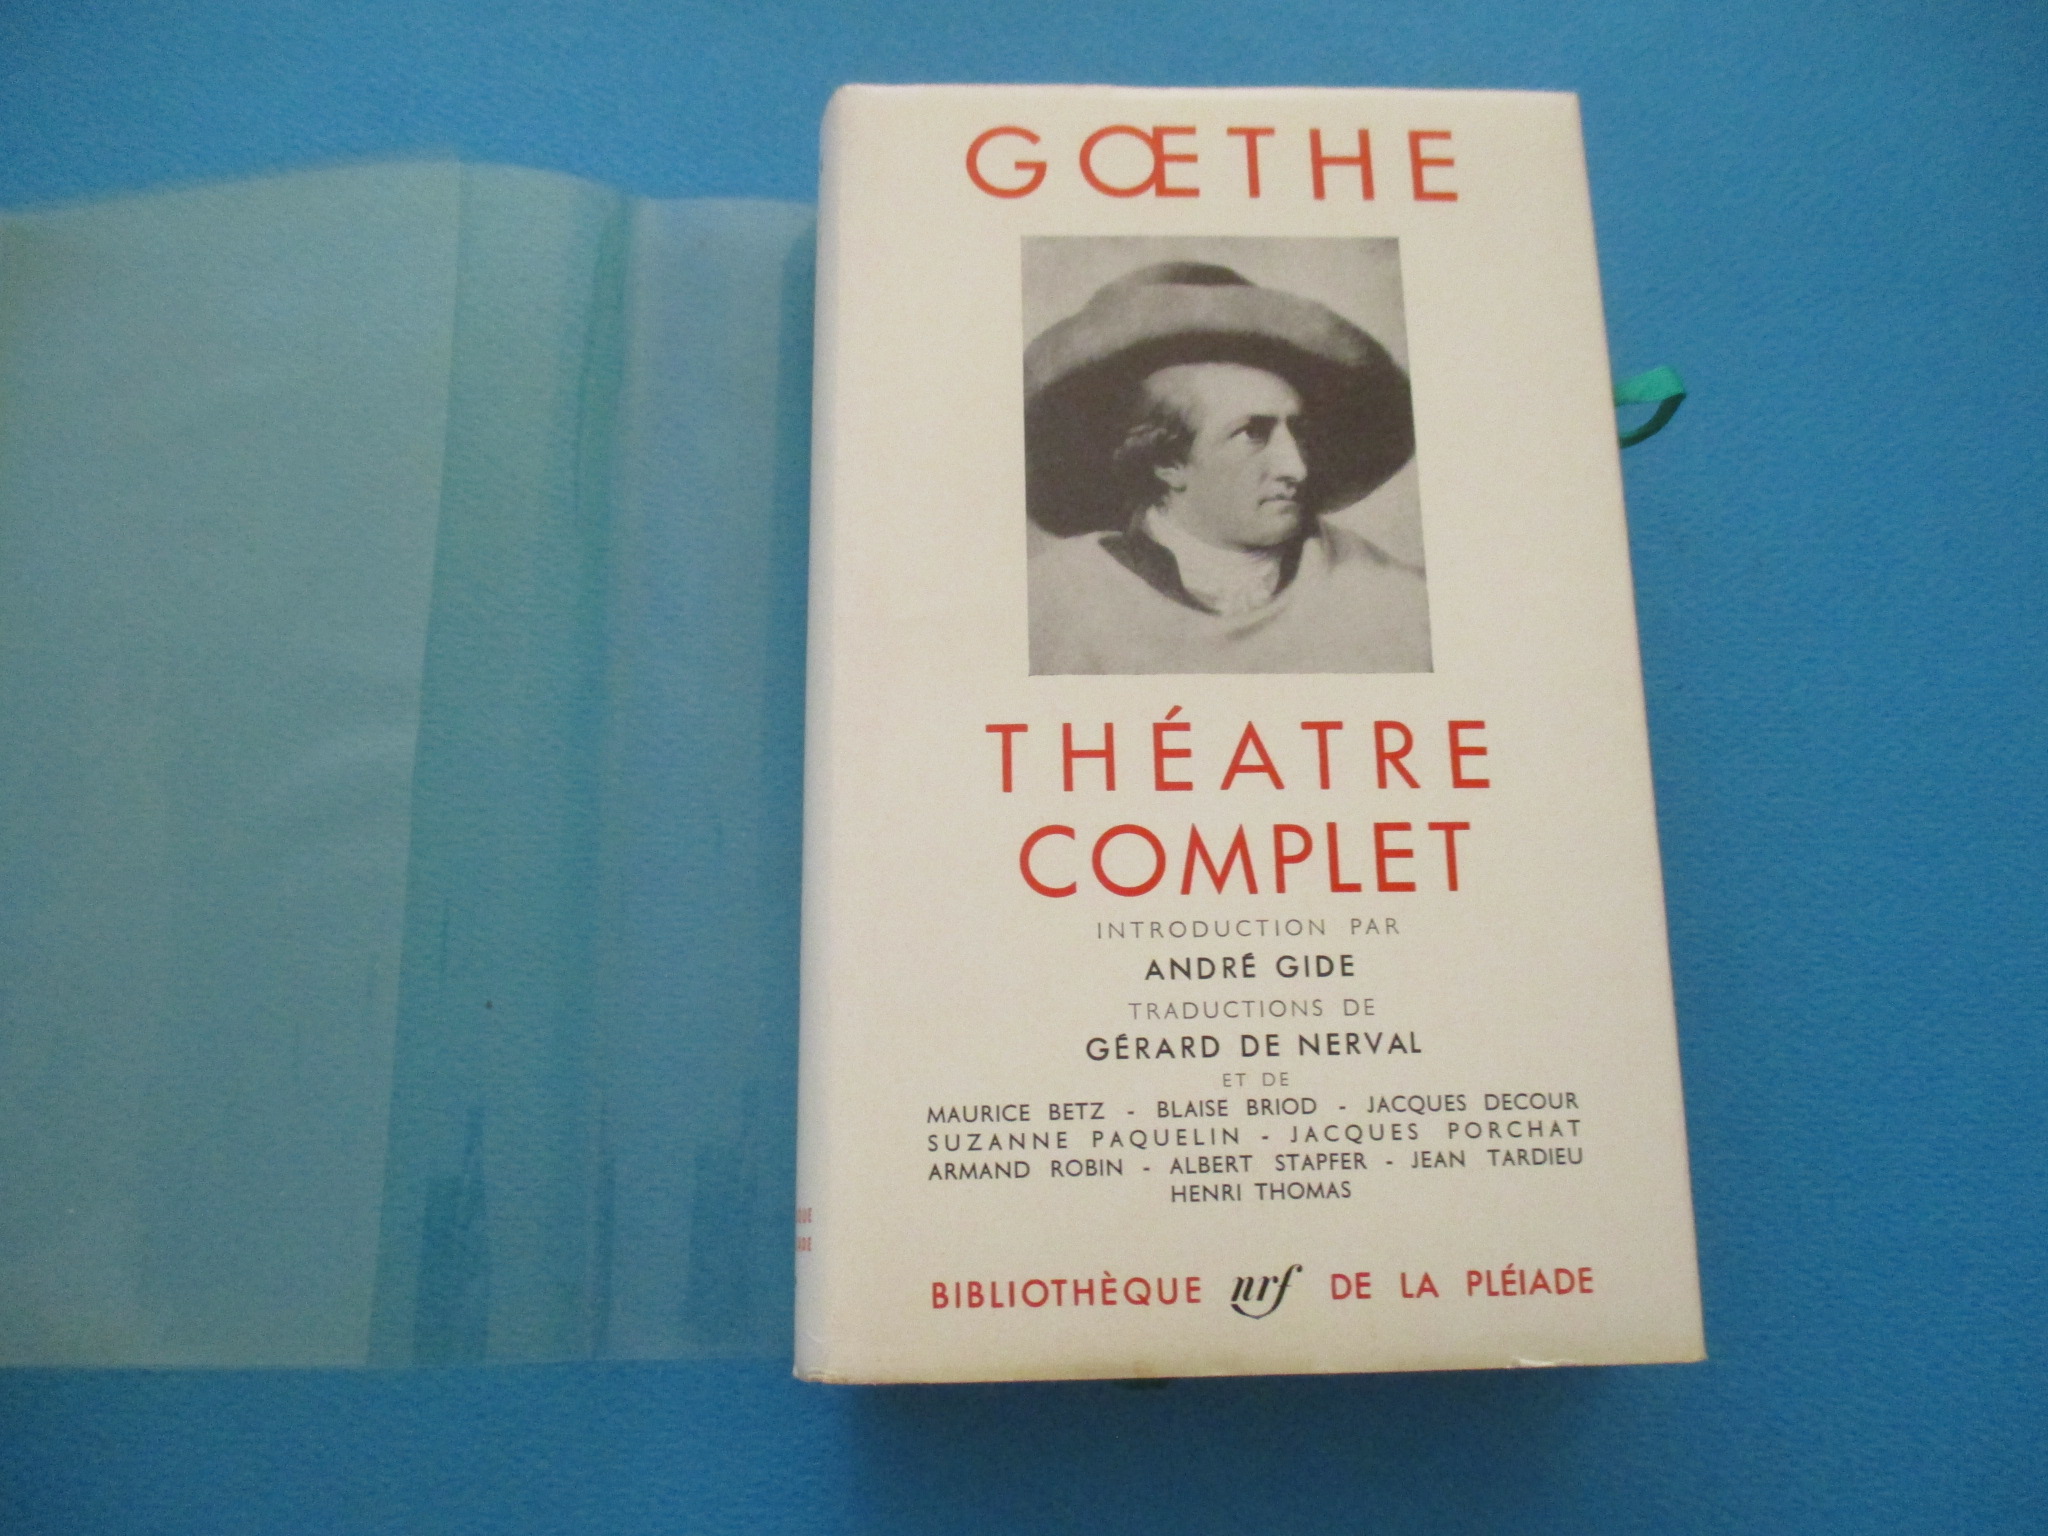 Théâtre complet, Goethe, La Pléiade 1958